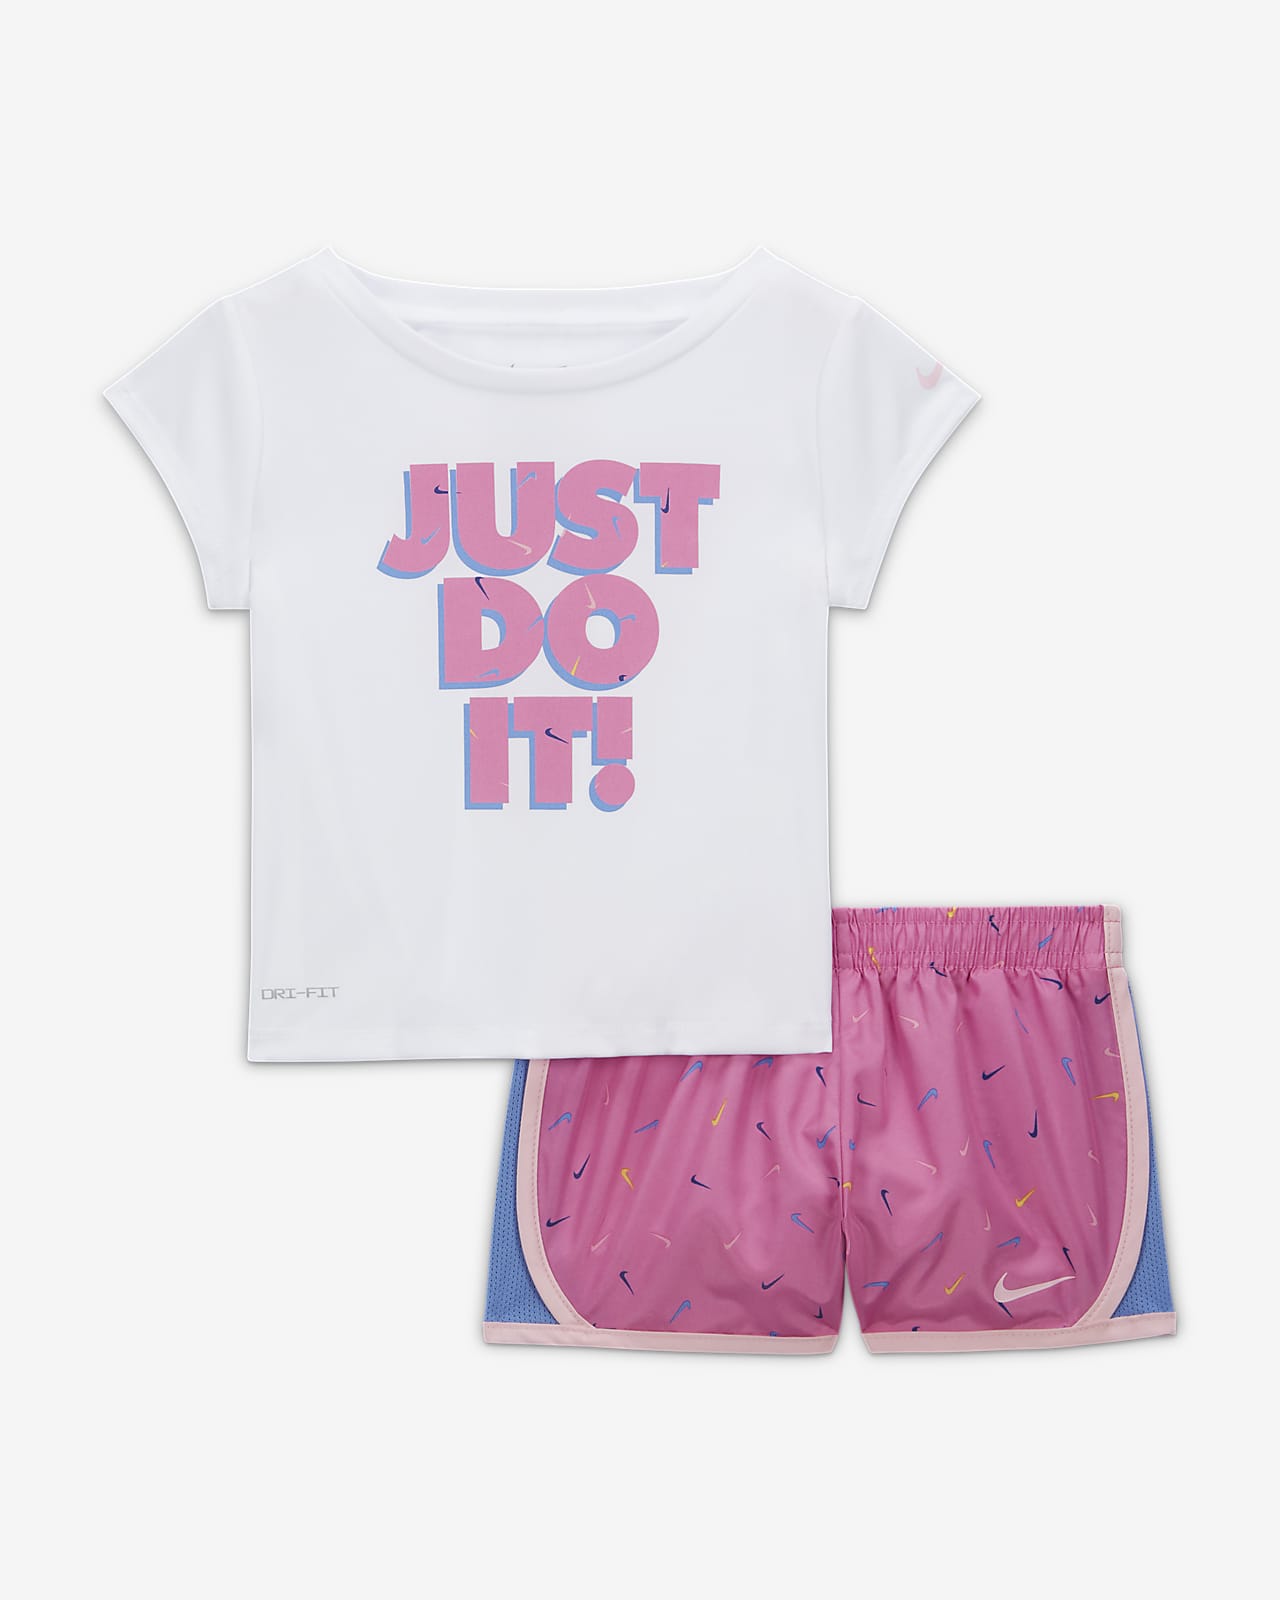 Nike Dri-FIT Tempo Little Kids' Shorts